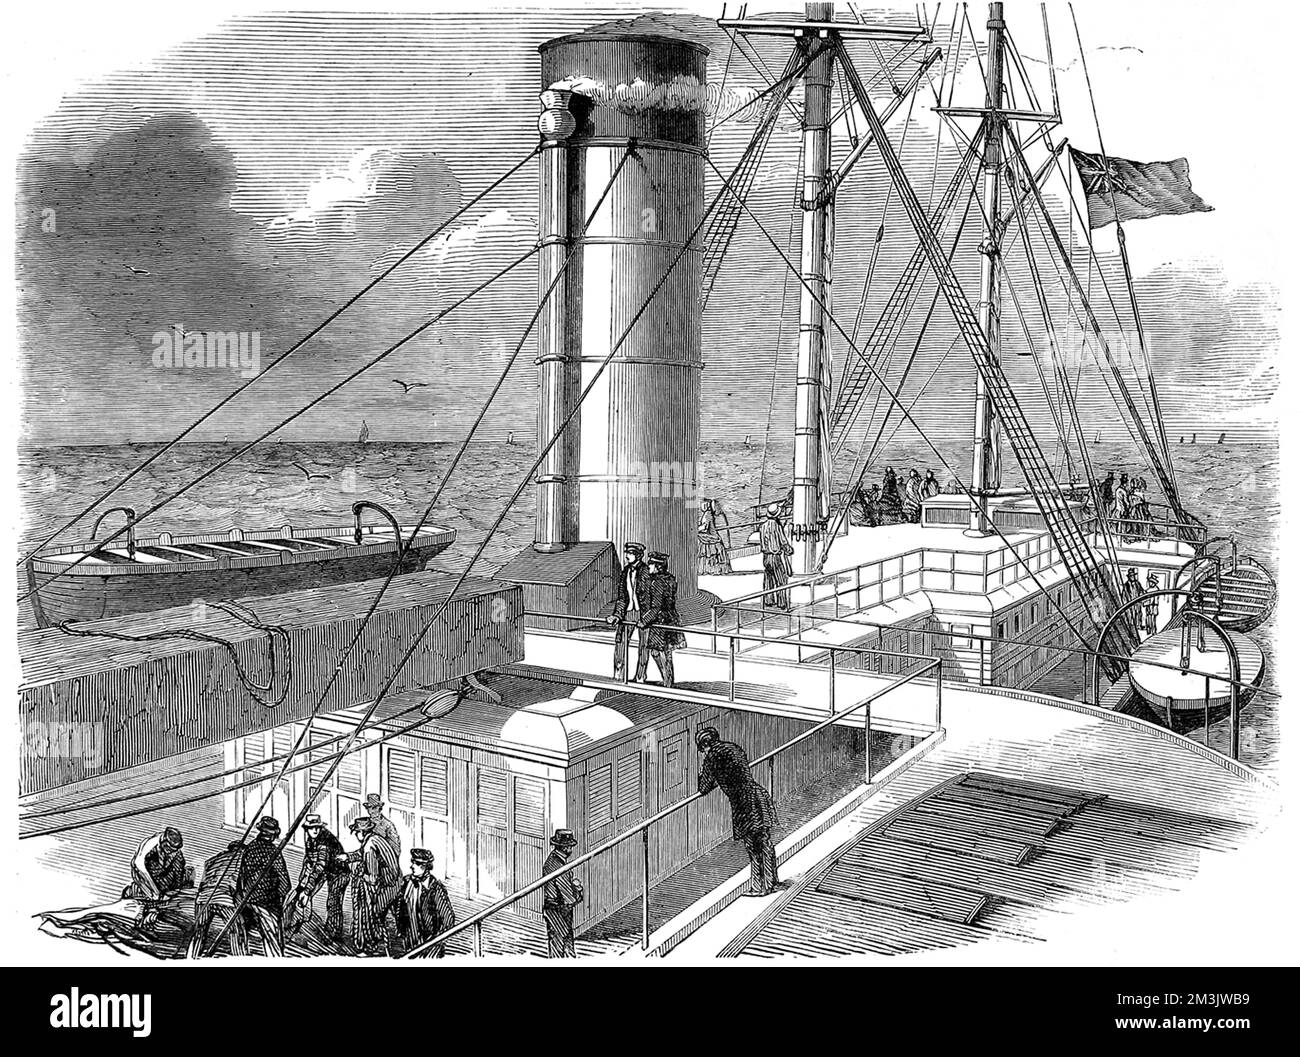 L'après-pont de Cunard Line Royal Mail Paddle-steamer 'Asie' en mer. 'Asia' était le plus grand navire à vapeur encore construit sur la rivière Clyde, avec une longueur totale de 280 pieds et un tonnage brut de 2226 tonnes. Dans cette image, on peut clairement voir les bateaux du navire sur leurs avits et l'entonnoir pour le moteur. 1850 Banque D'Images